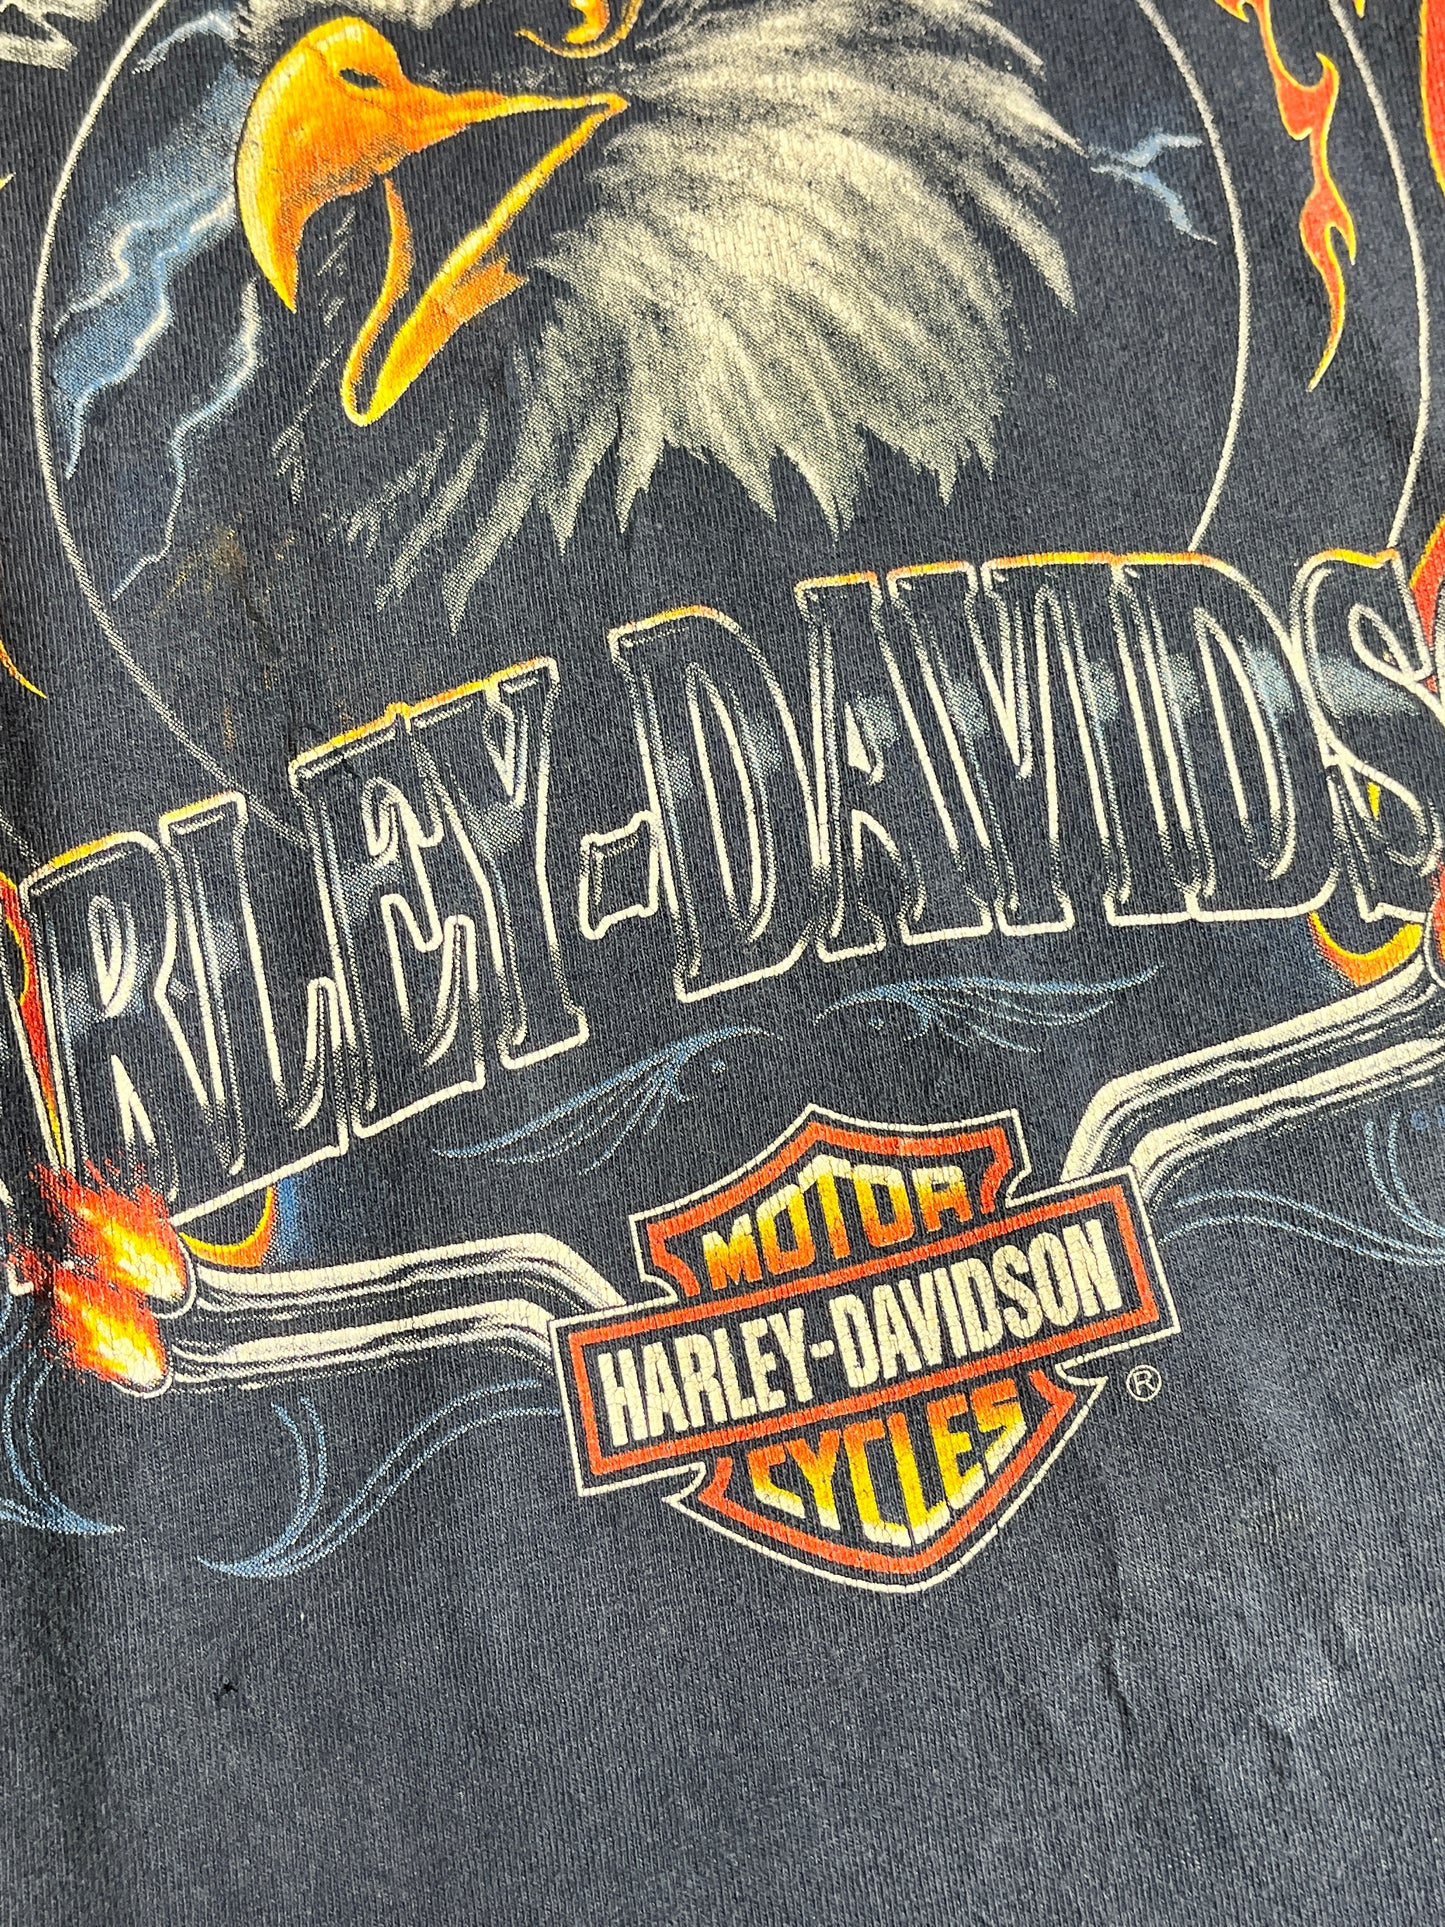 Vintage Harley Davidson T-Shirt Ottawa Wild and Free Animal Tee